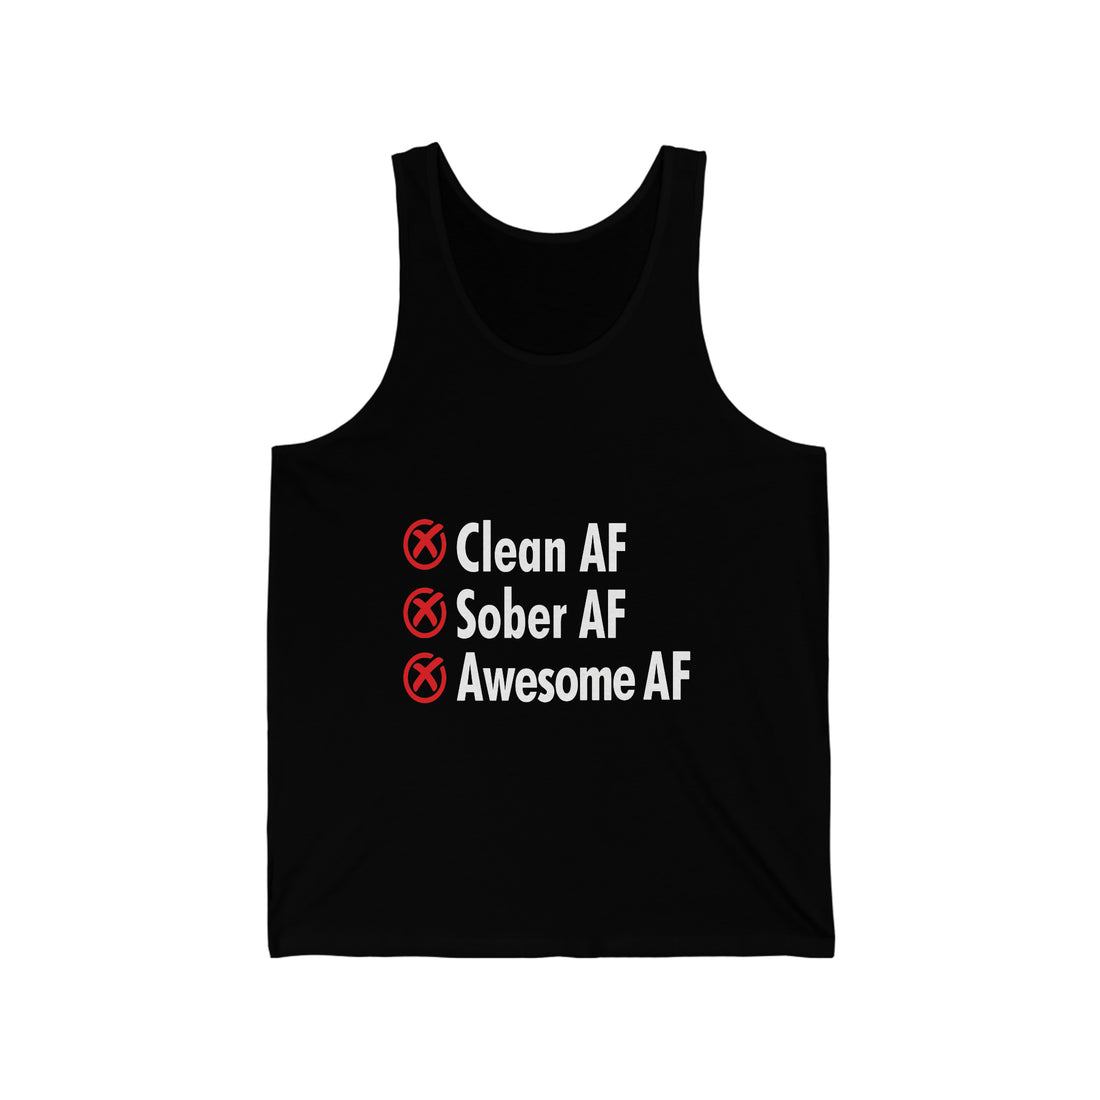 Clean AF Sober AF Awesome AF - Unisex Jersey Tank Top